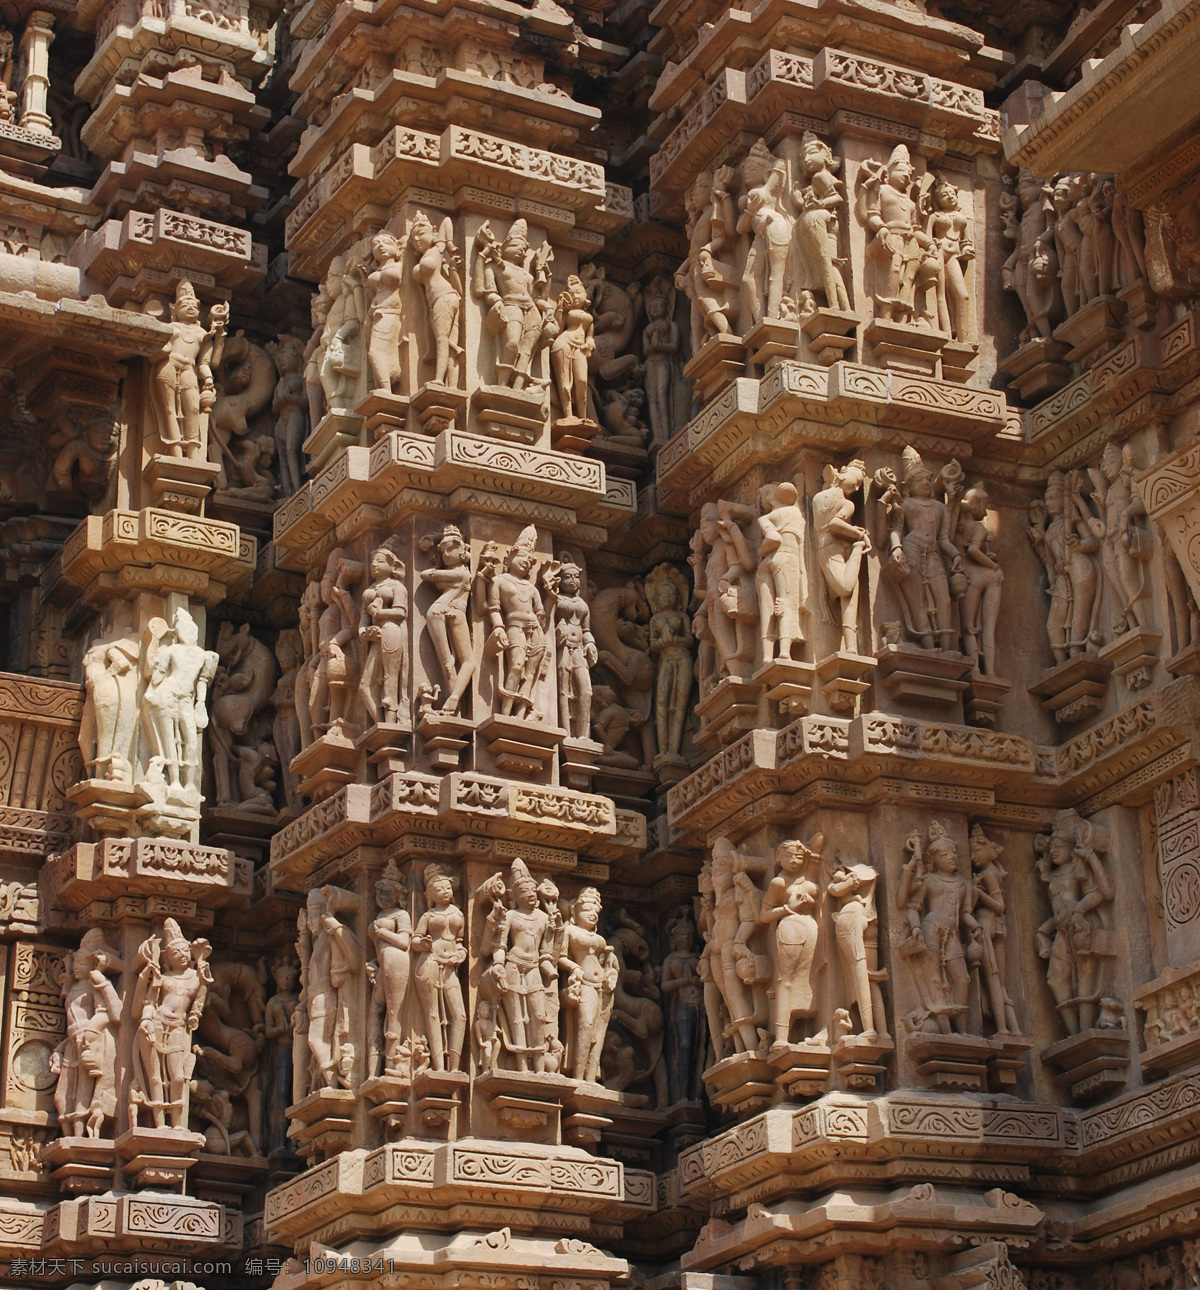 雕刻 人物 印度 建筑 印度中央邦 印度教堂 庙宇 雕刻建筑 名胜古迹 古老建筑 著名建筑 旅游景区 建筑设计 环境家居